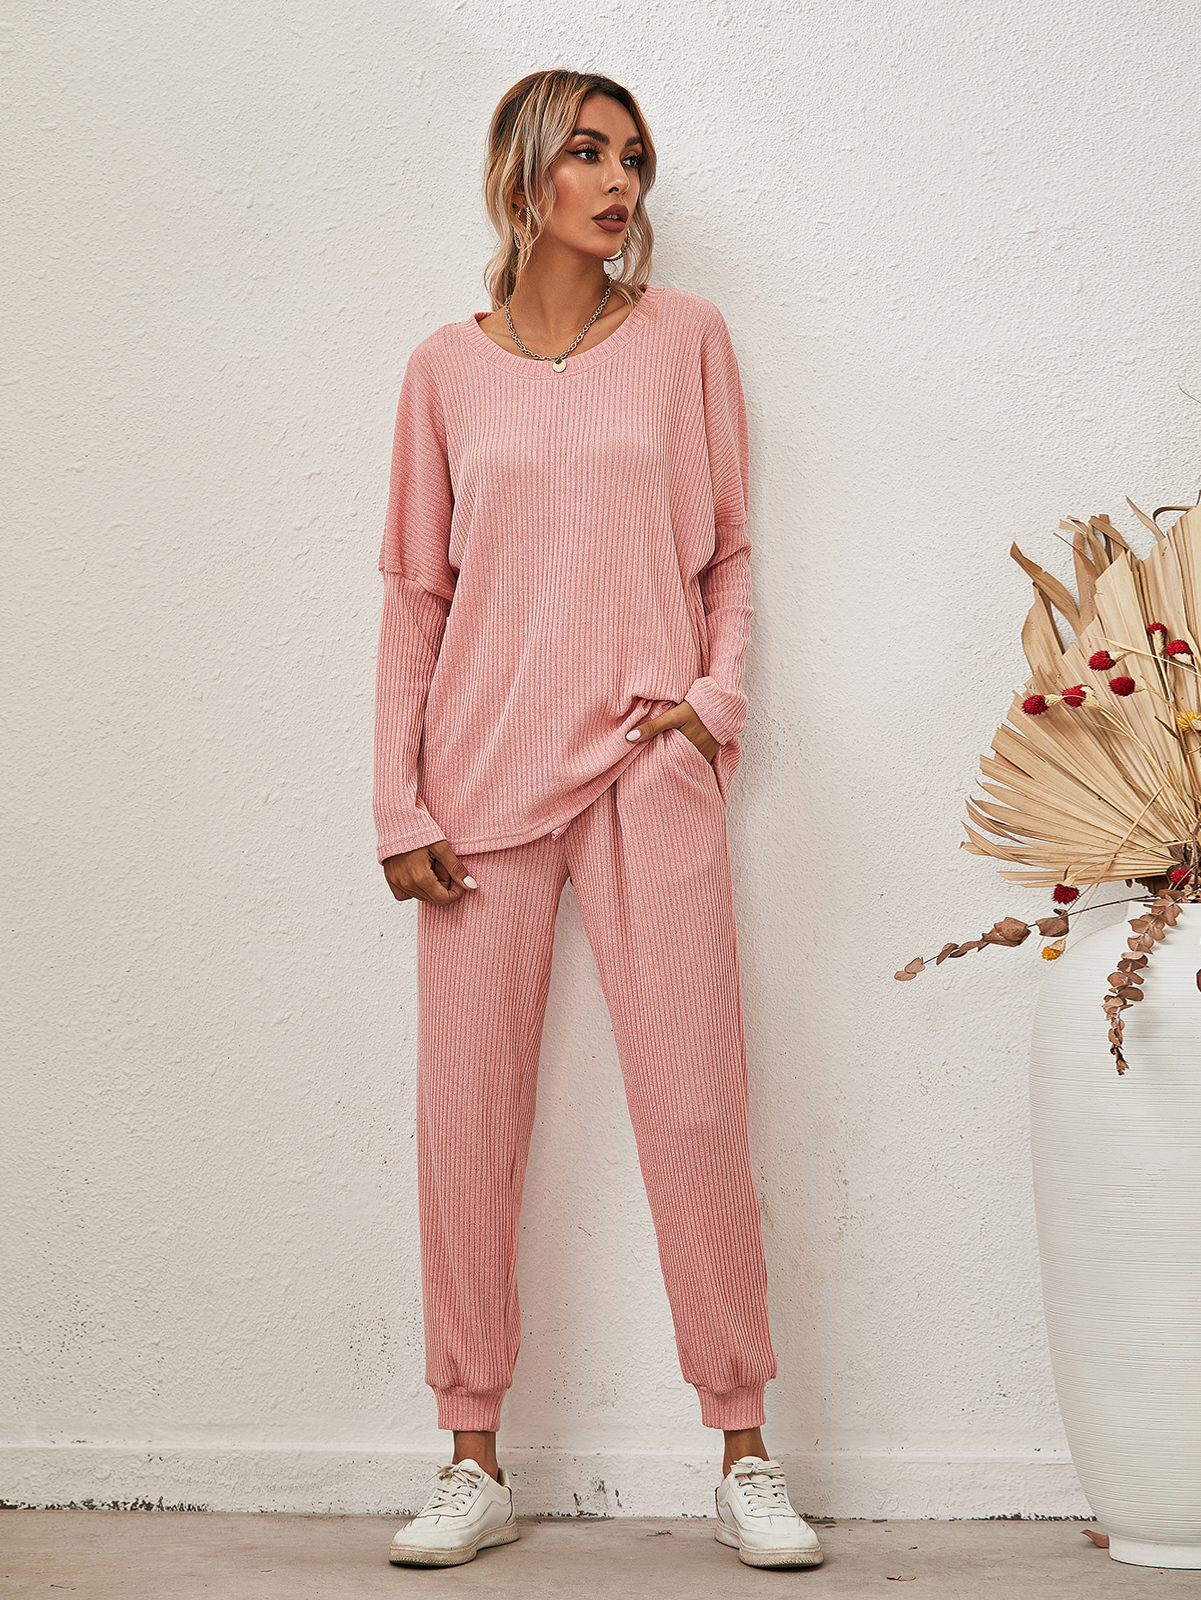 Ellie Set Loungewear Long Sleeve Pyjamas Ladies Home Wear Cute Set